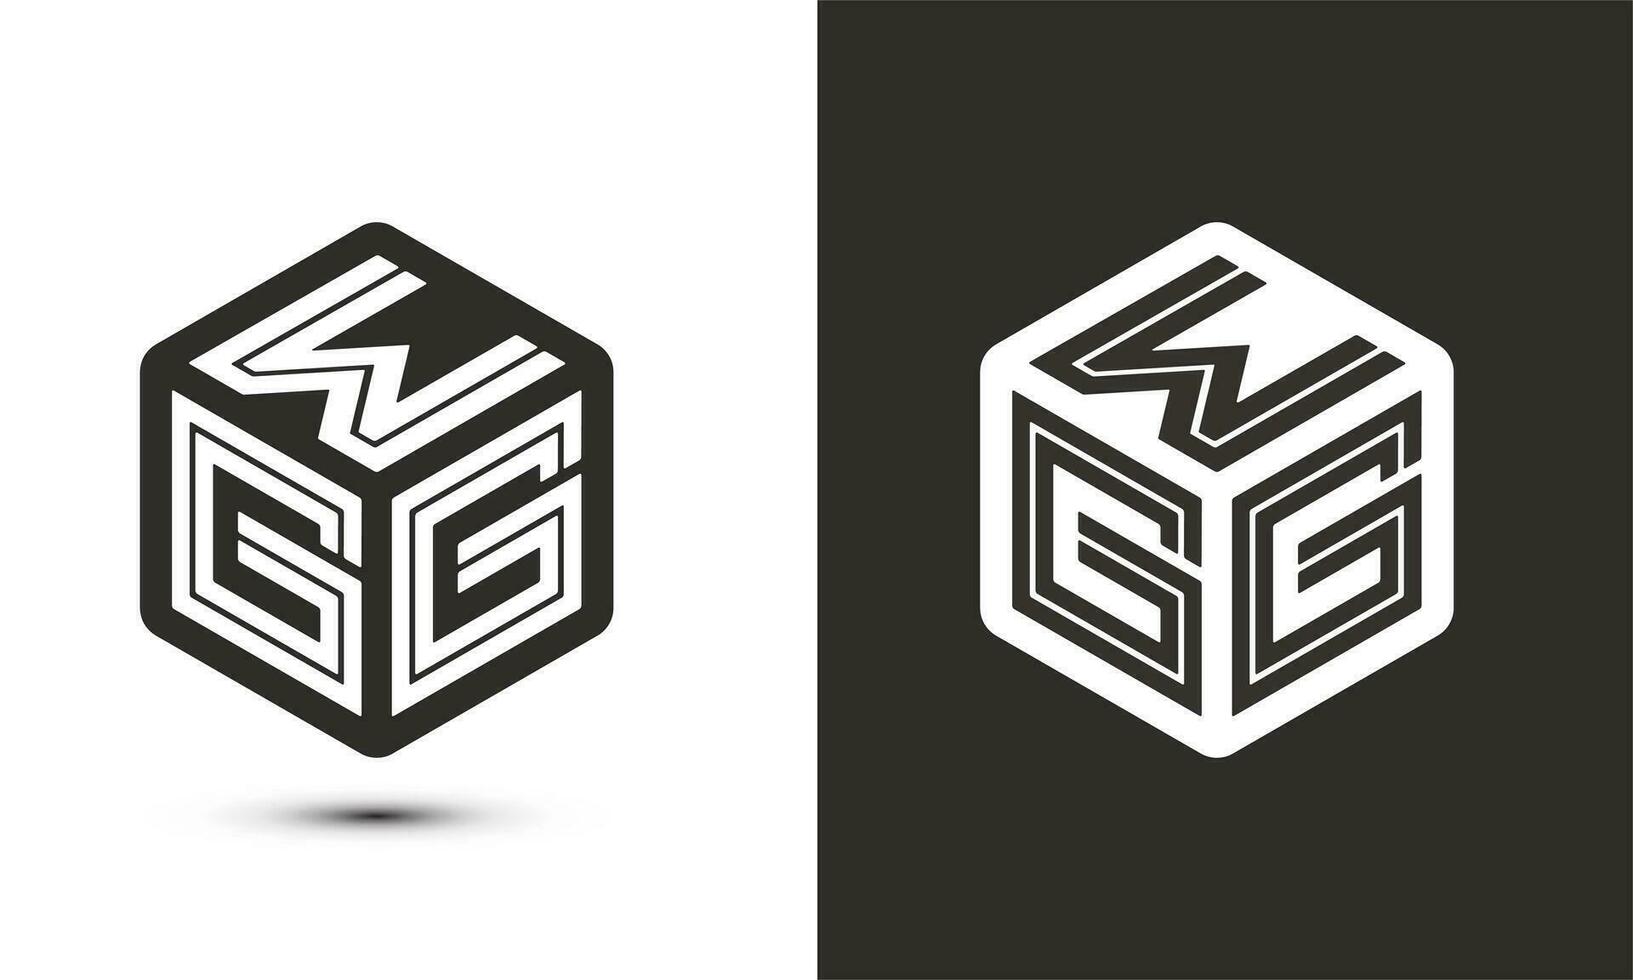 WGG letter logo design with illustrator cube logo, vector logo modern alphabet font overlap style.